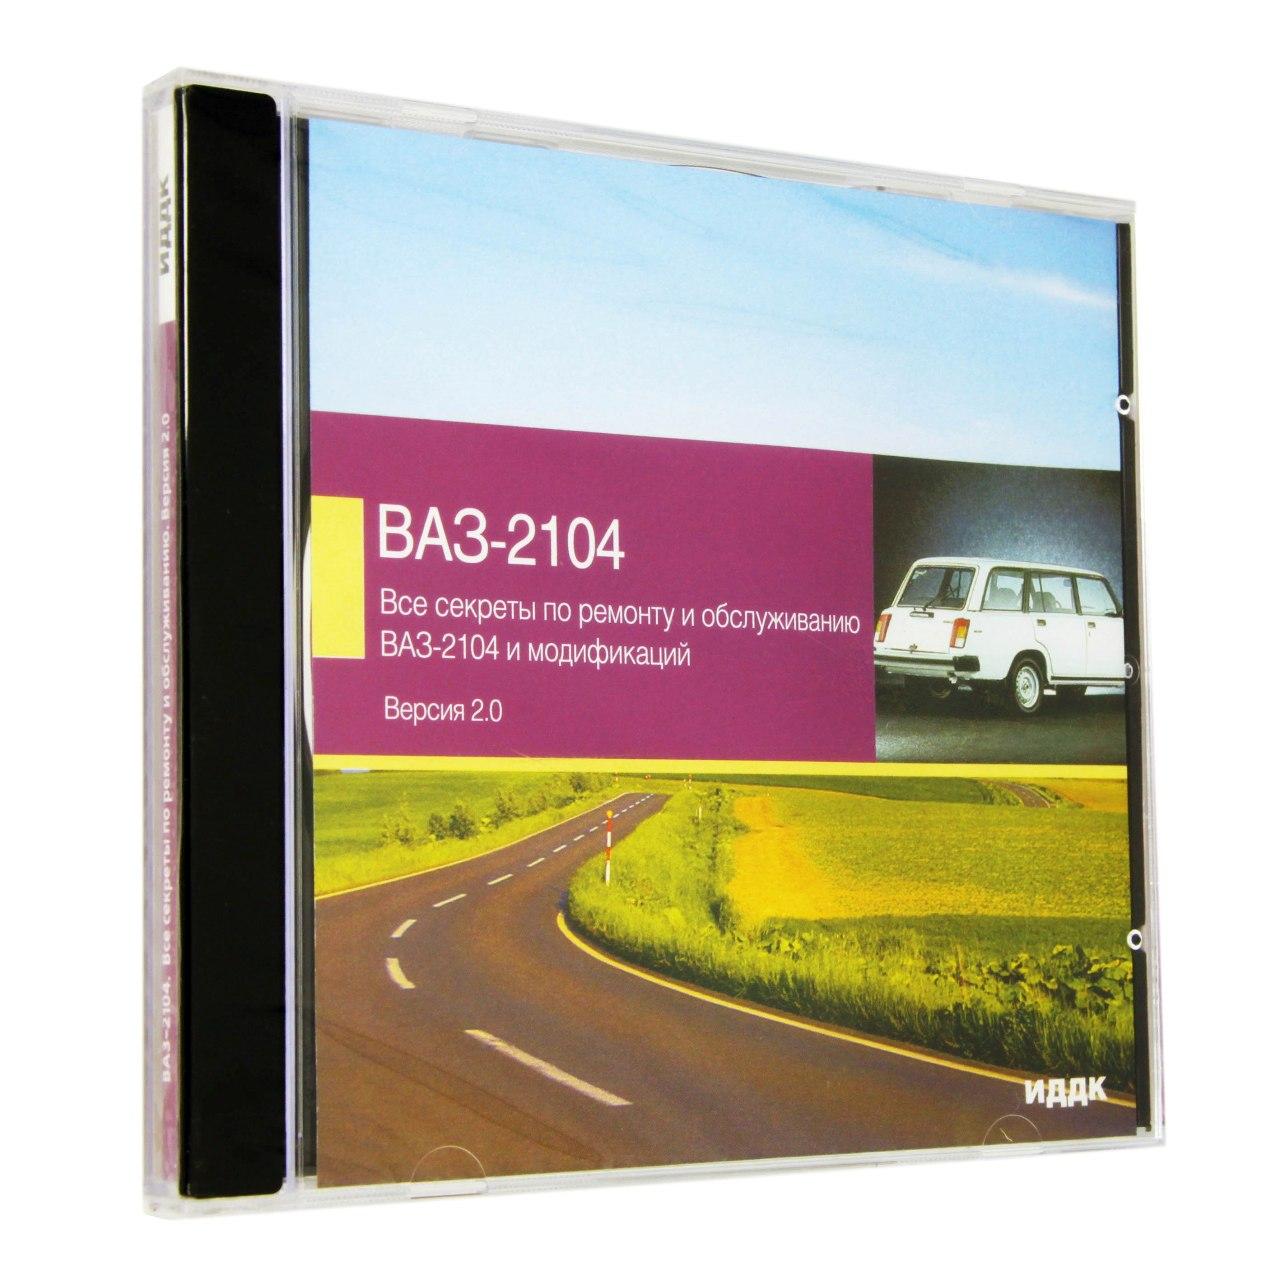 Компьютерный компакт-диск ВАЗ - 2104. Версия 2.0 [Все секреты по ремонту и обслуживанию] (ПК), фирма "ИДДК", 1CD